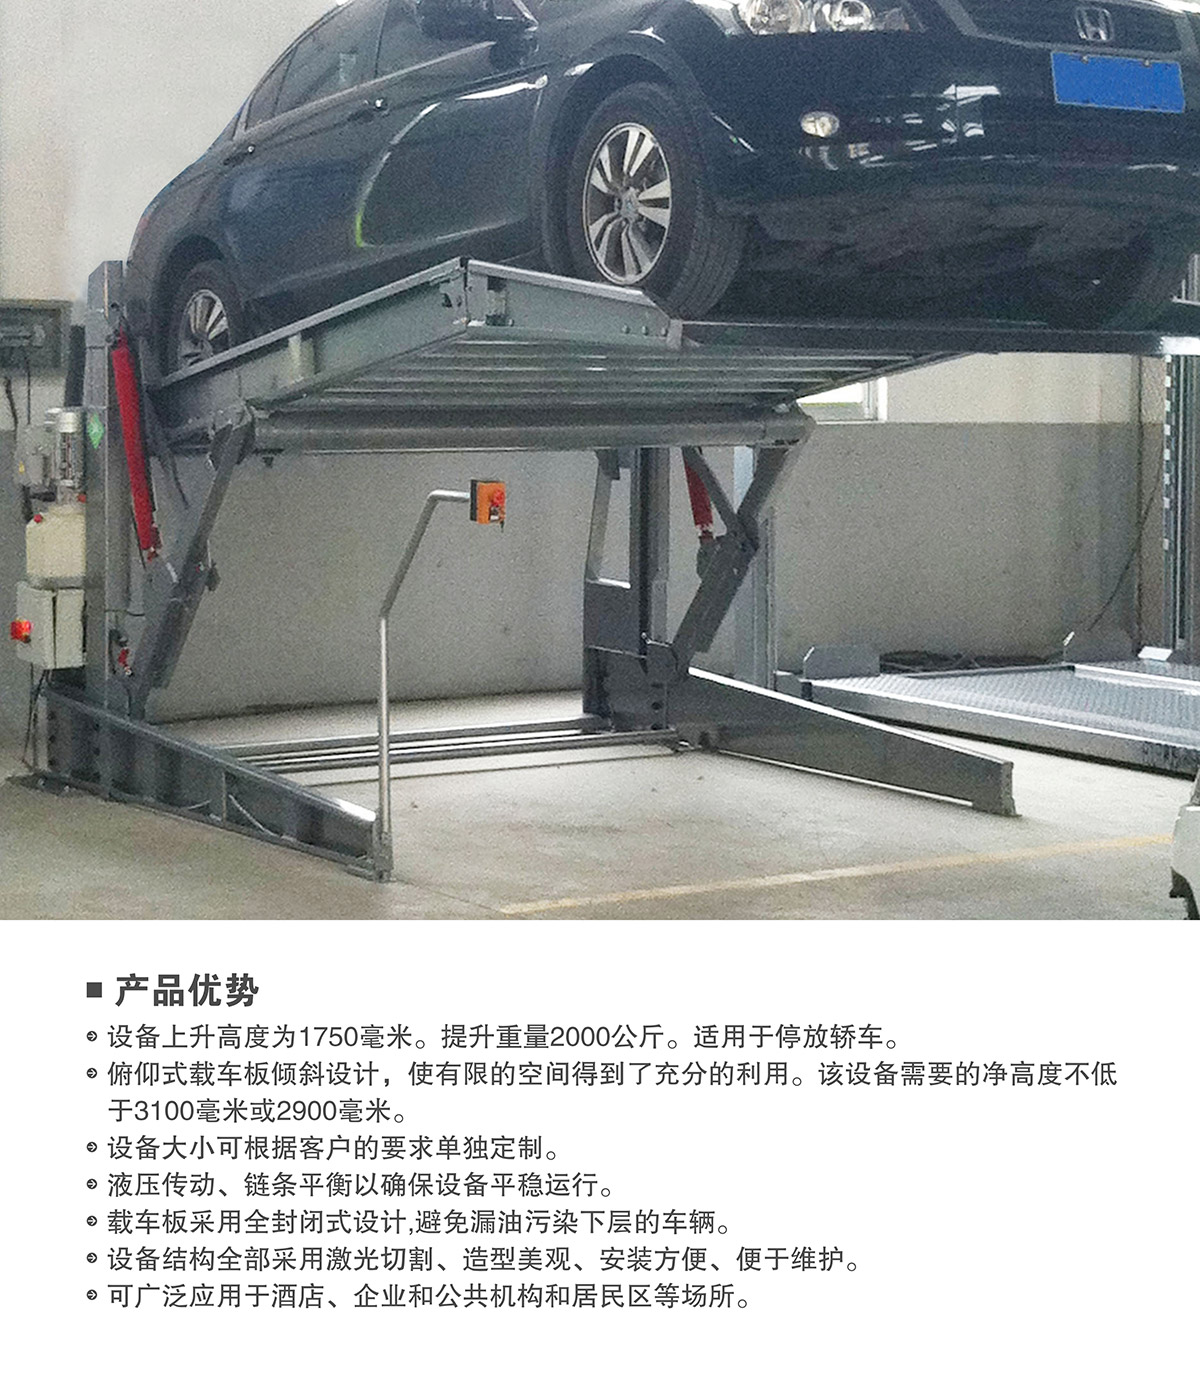 机械车位俯仰式简易升降机械停车设备产品优势.jpg